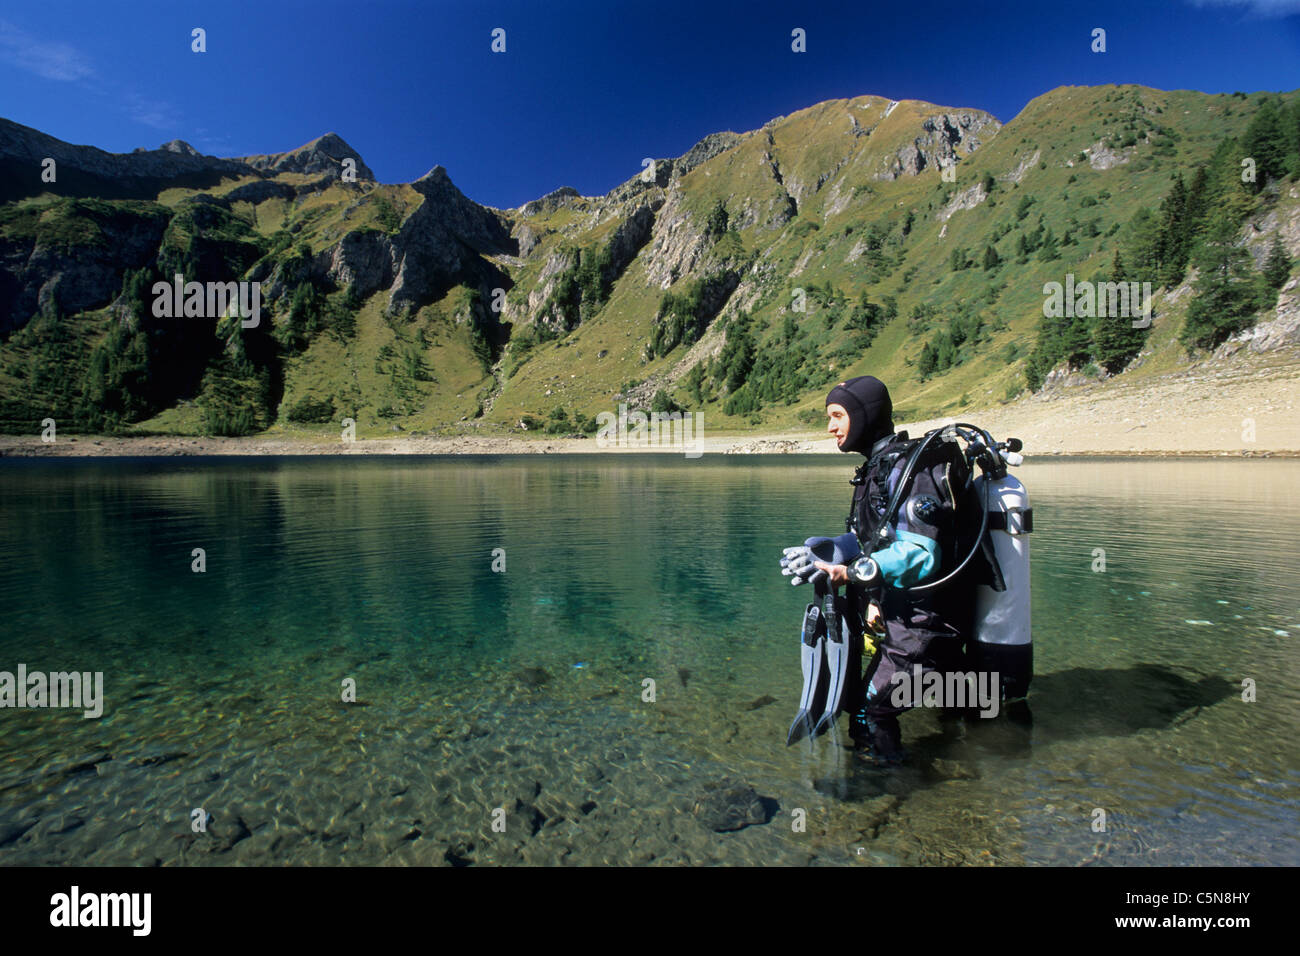 Scuba Diver at Lake Tremorgio, Ticino, Switzerland Stock Photo